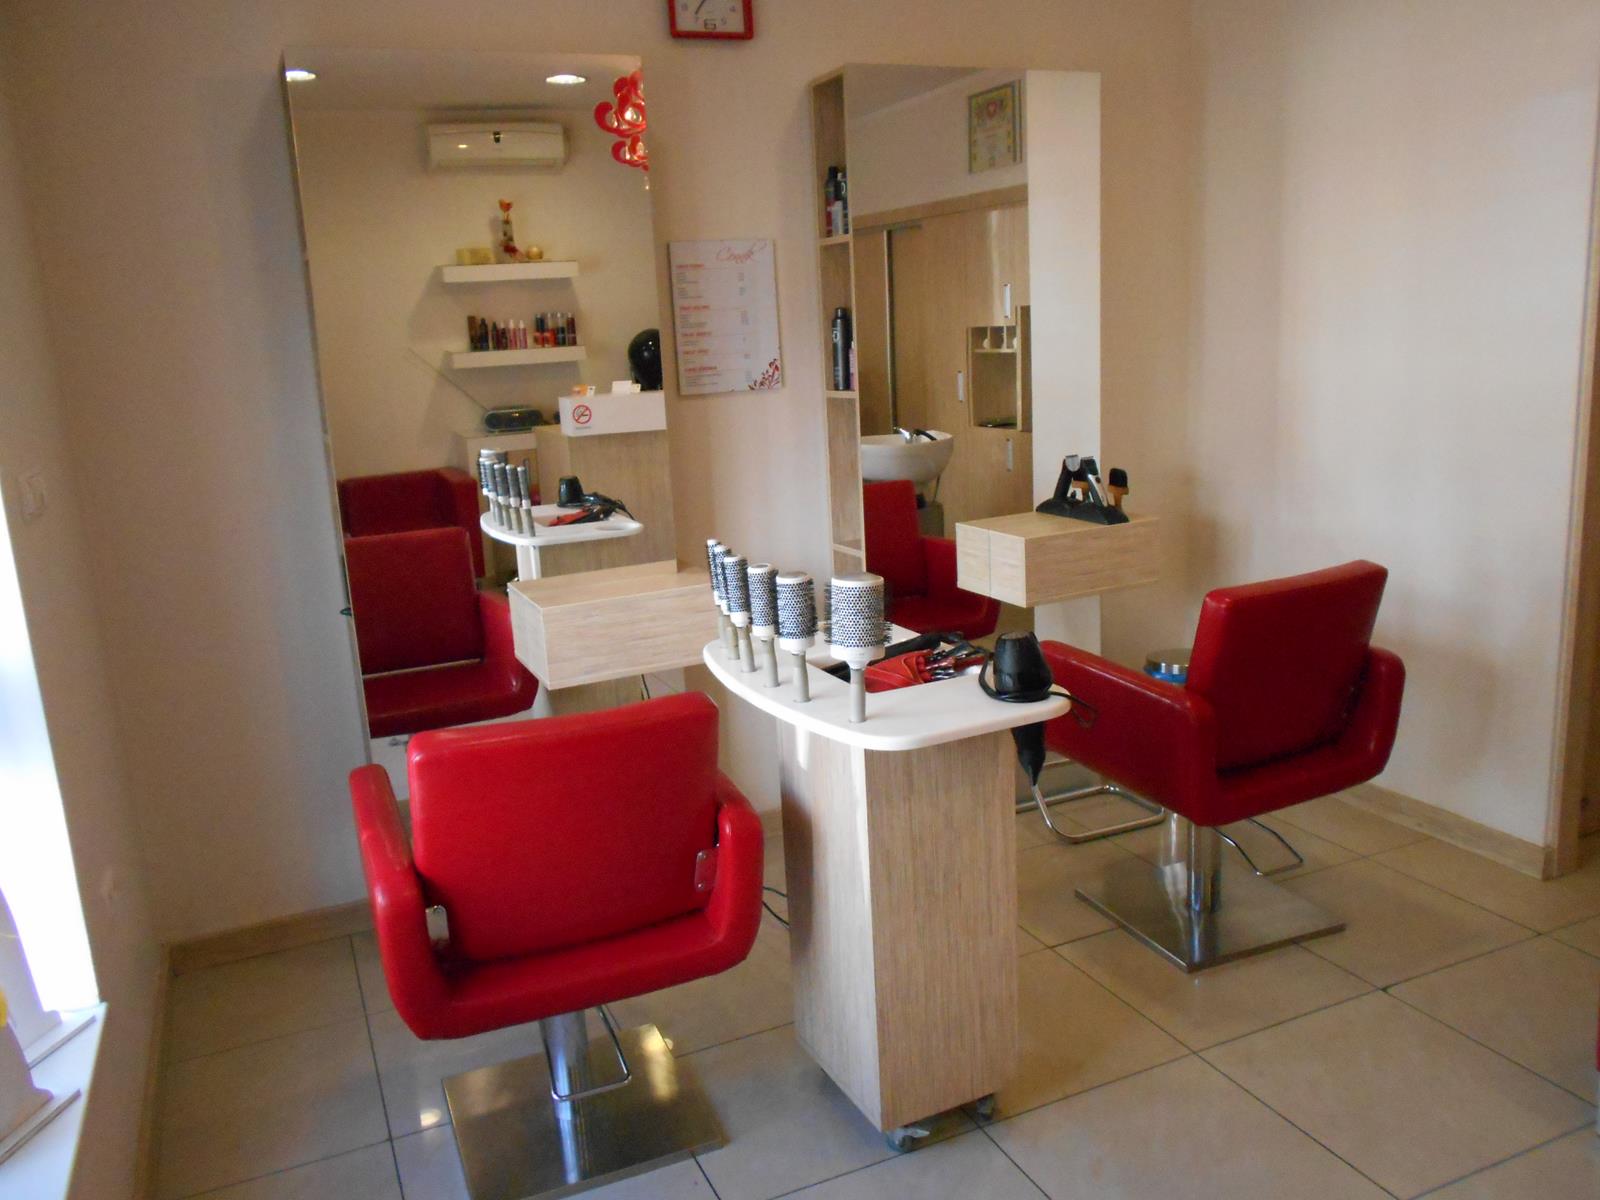 Salon fryzjerski Mokotow (7)